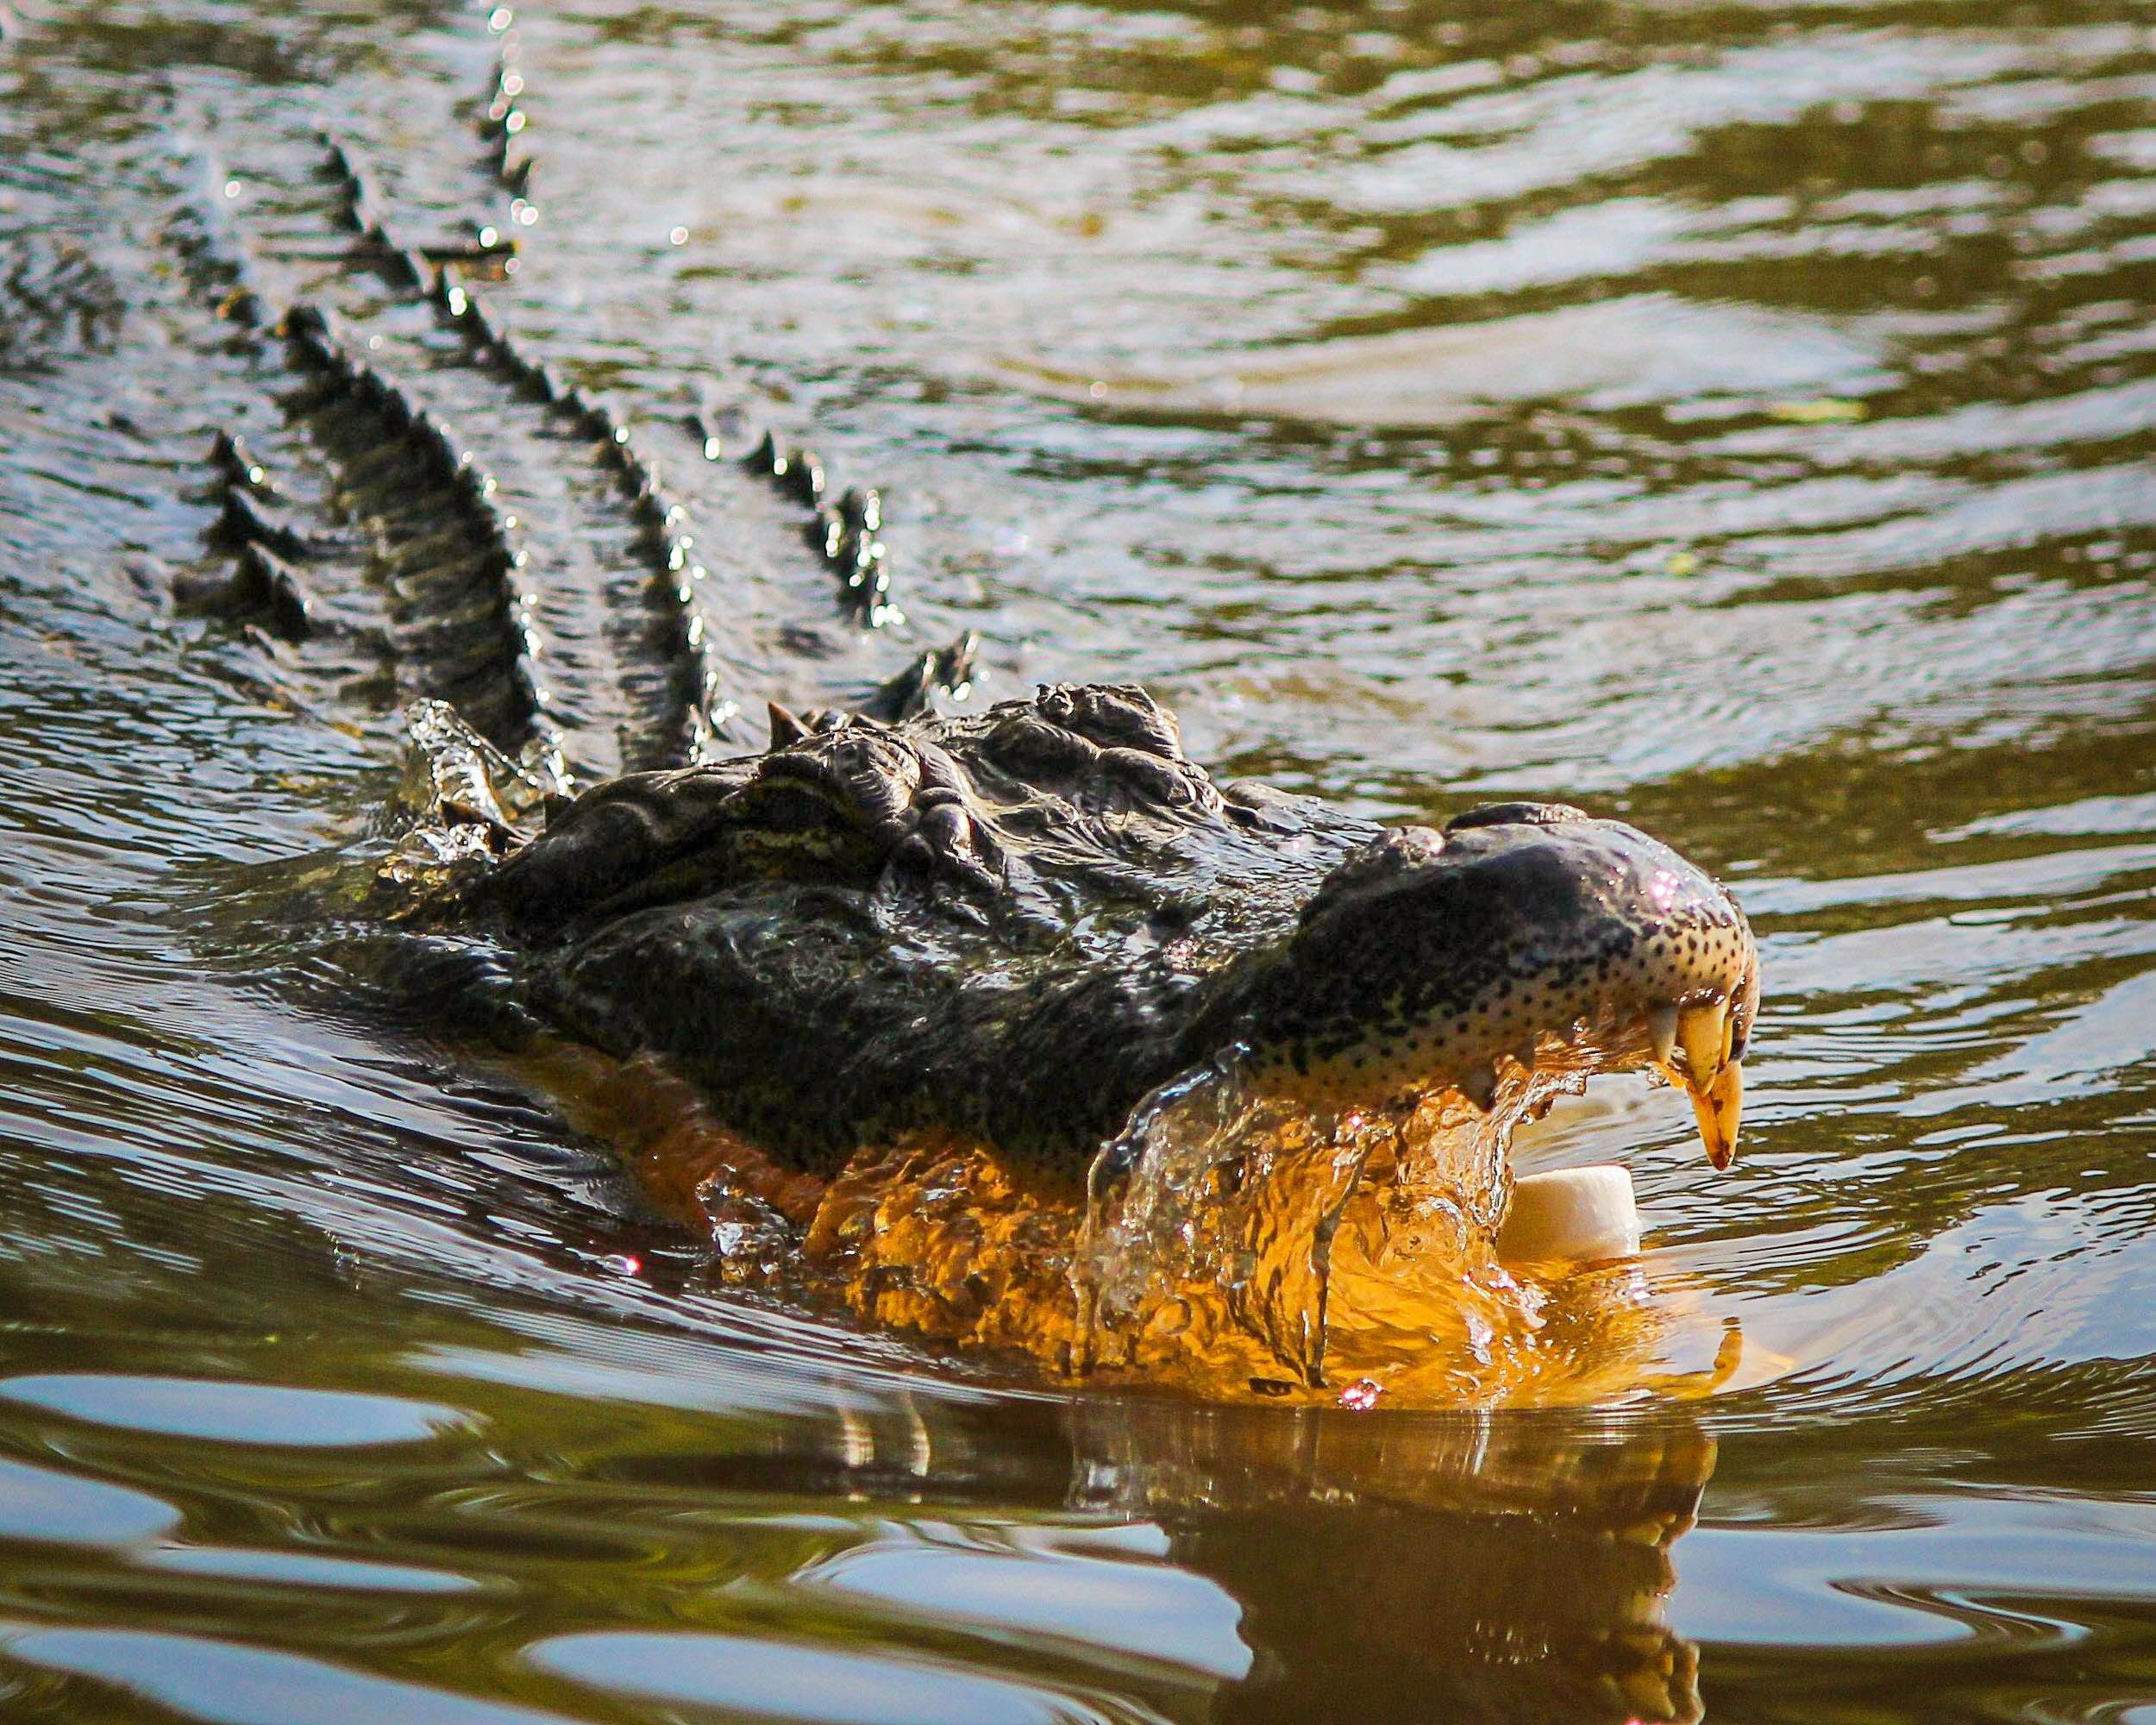 Фото болото, дикая природа, хищник, рептилия, фауна, крокодил, аллигатор, позвоночные, атаки, опасно, луизиана, крокодилы, американский аллигатор, Байю, нильский крокодил - бесплатные картинки на Fonwall